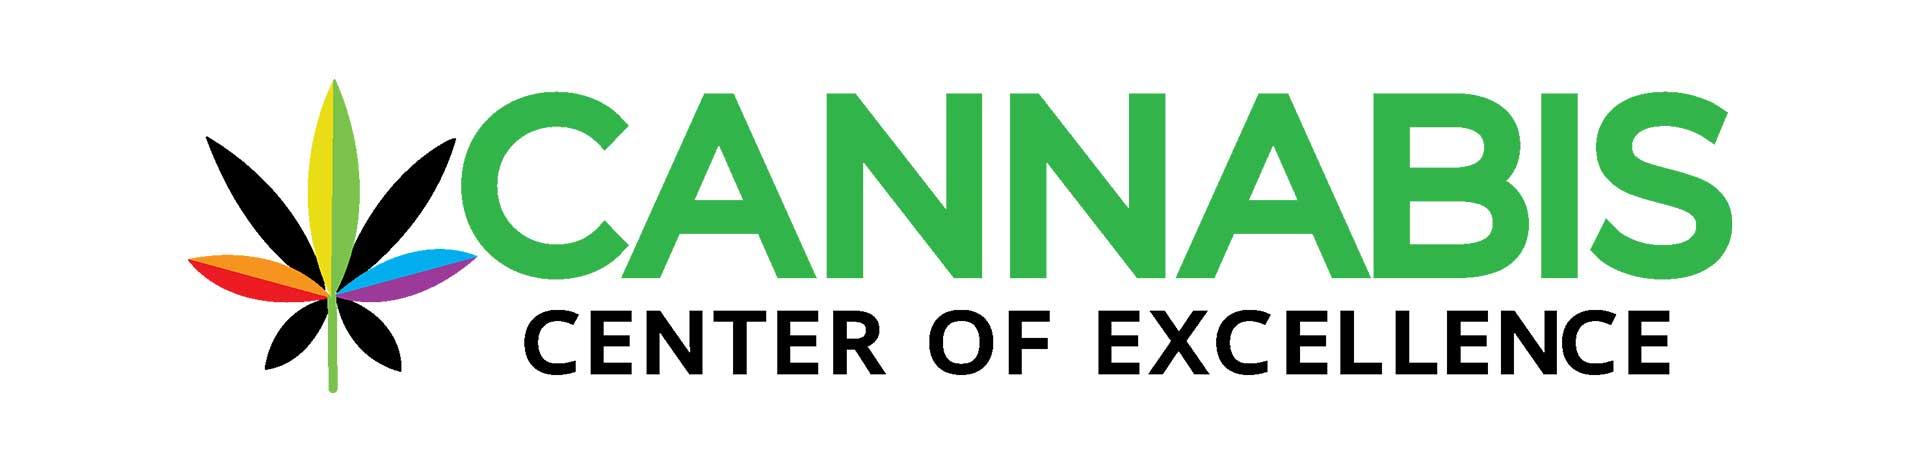 Cannabis center of excellence logo.